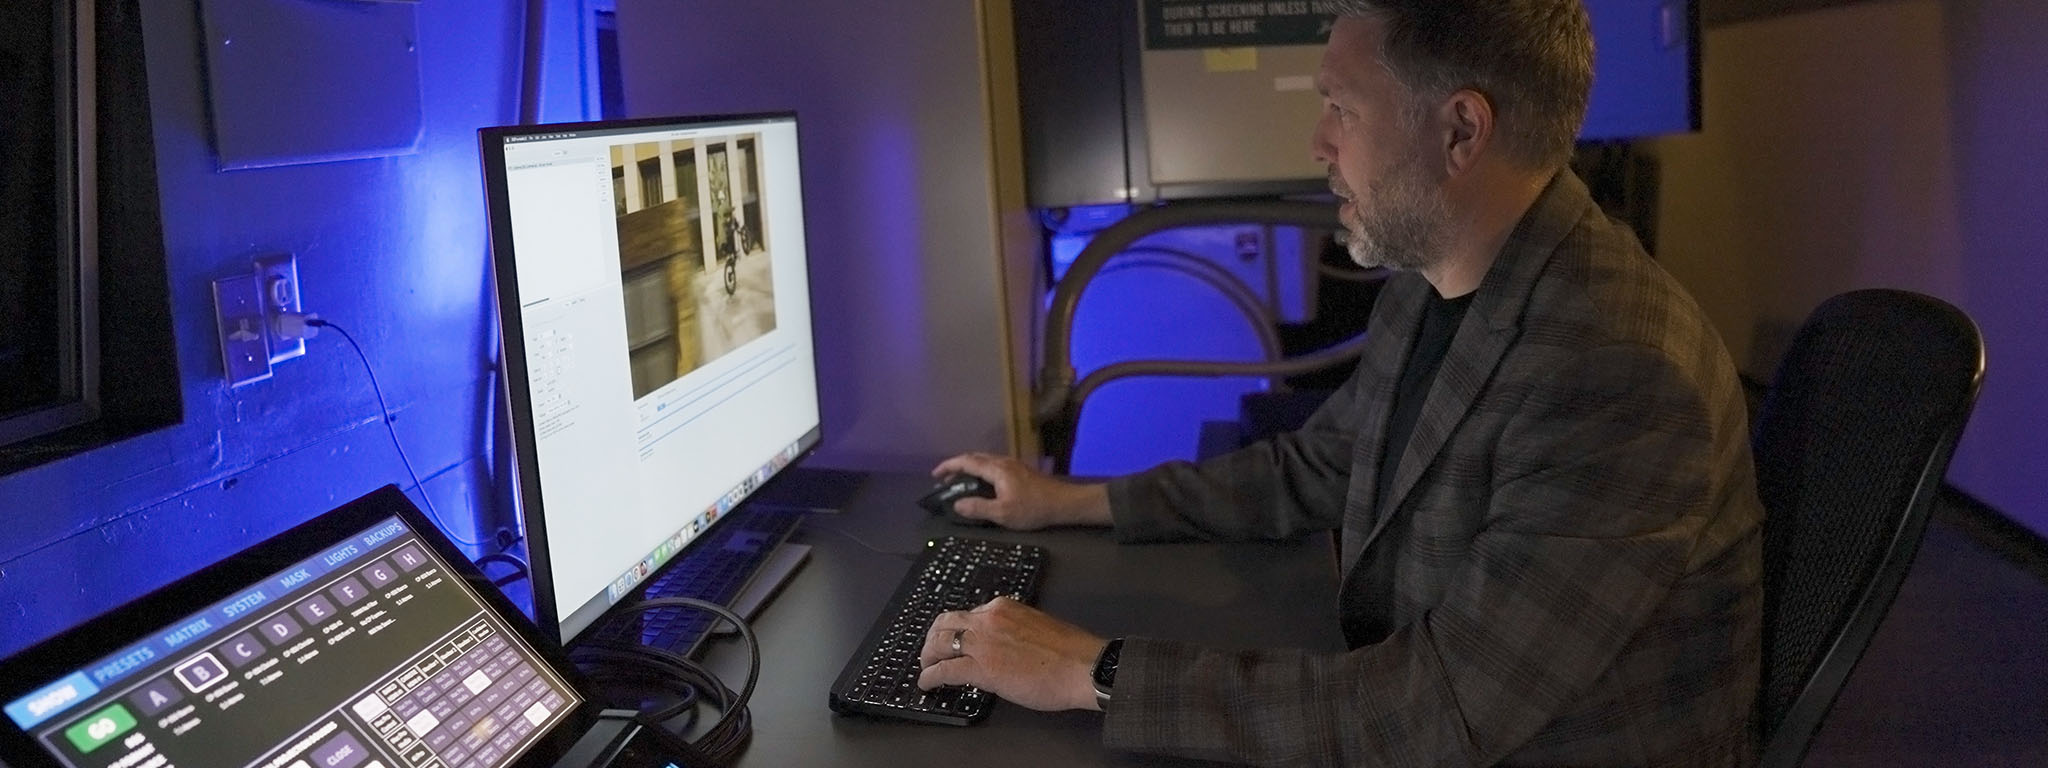 数字放映师 Ryan Carpenter 坐在电脑显示器前。